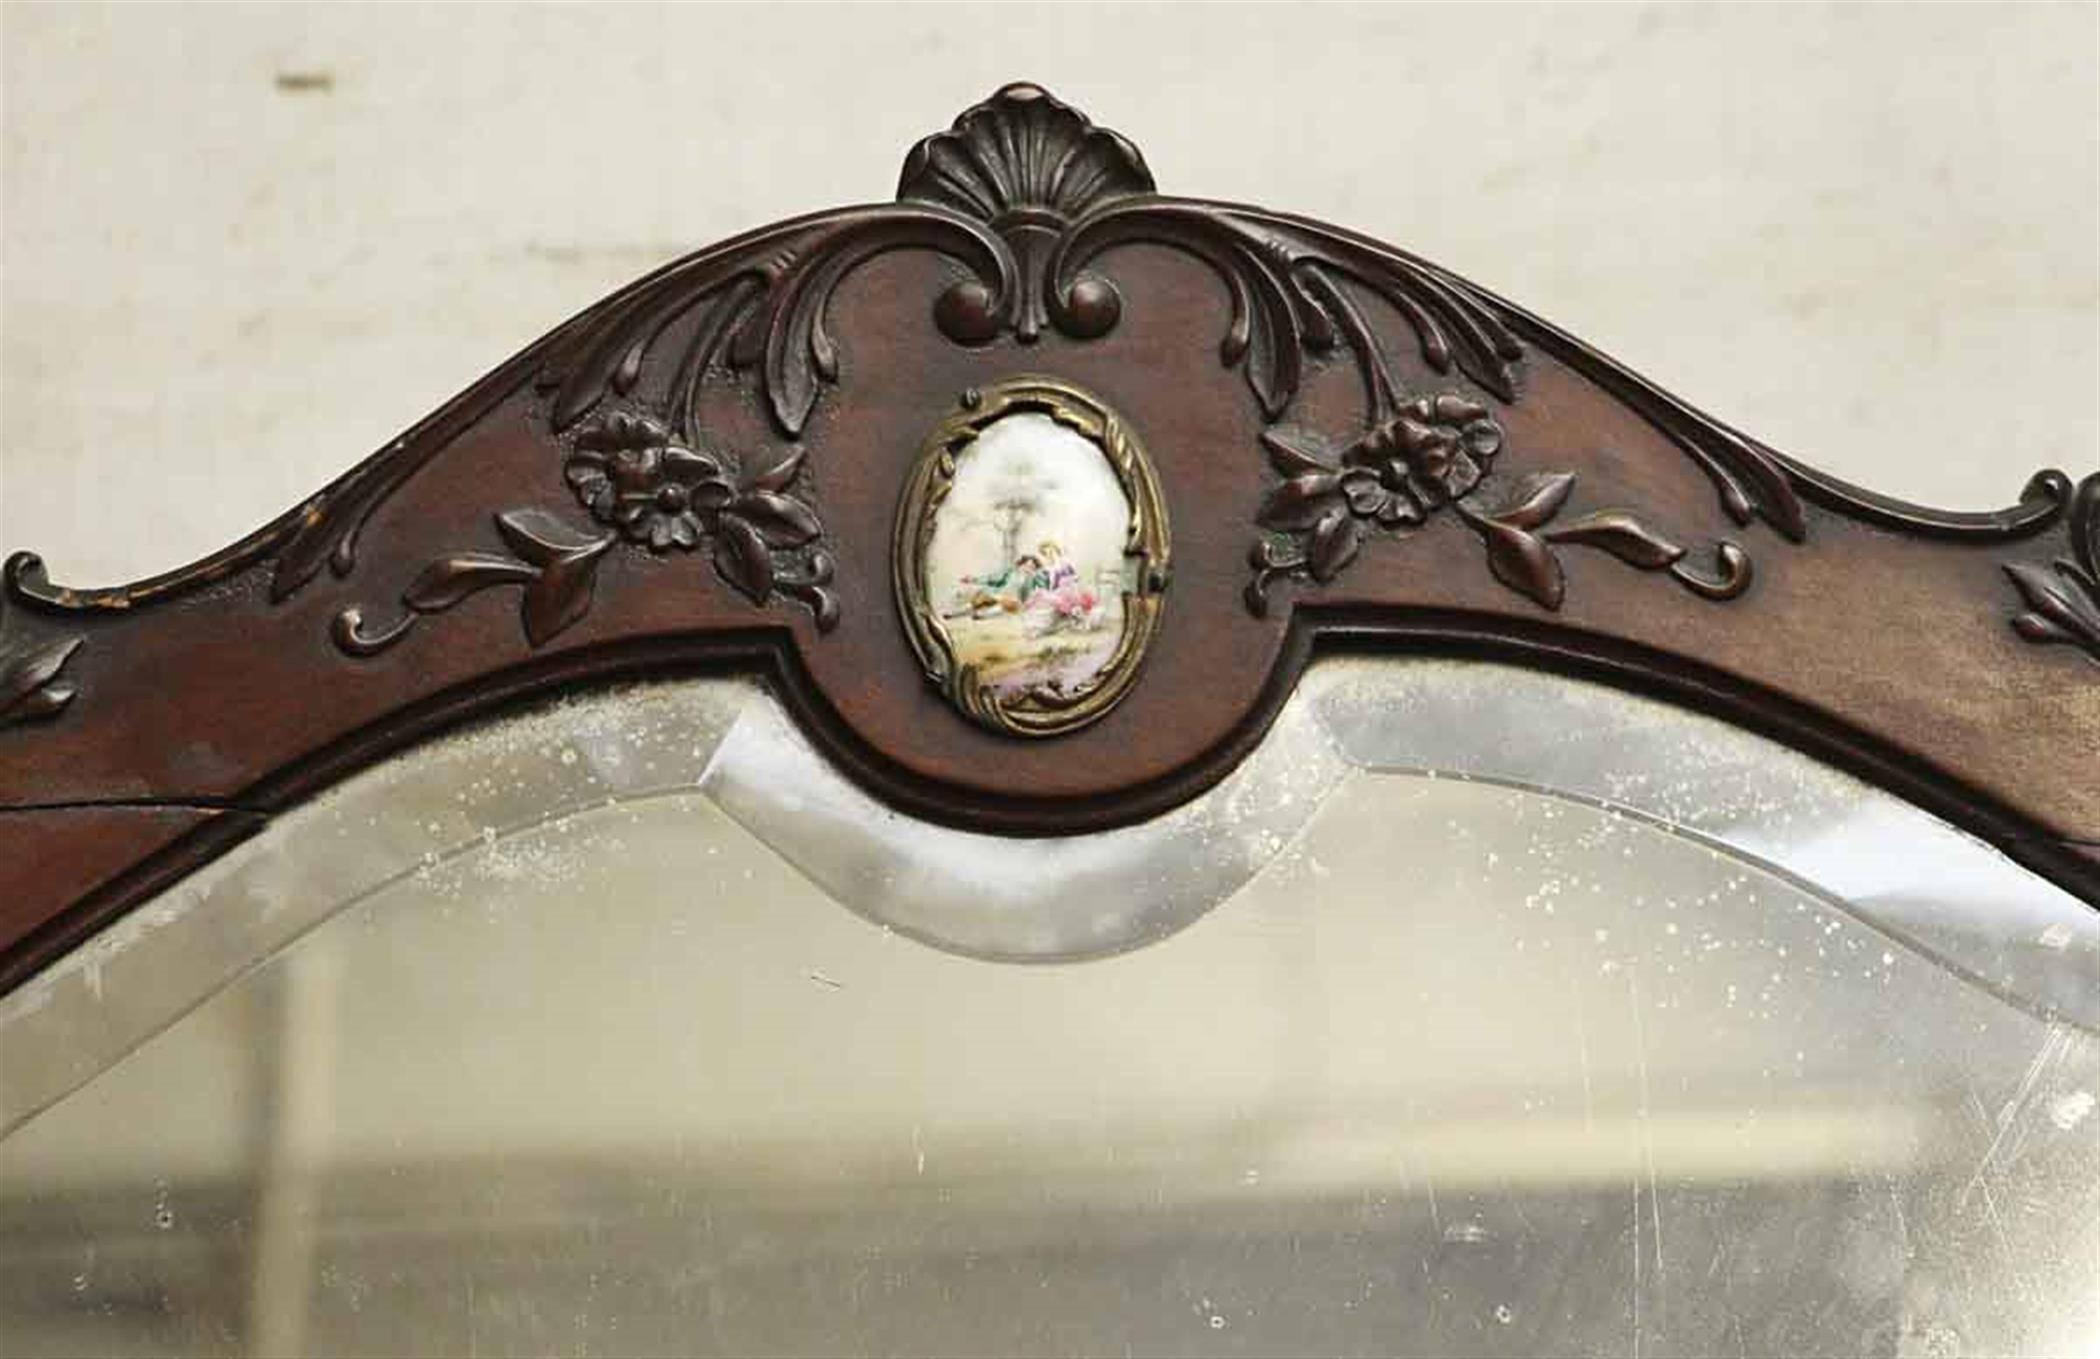 1880er Jahre schöne Queen Anne vier Schublade hölzernen Eitelkeit mit original abgeschrägten Spiegel und dekorative figurale Porzellan zieht. Der Spiegel ist außerdem mit einem dekorativen Detail aus Keramik an der Oberseite verziert. Oben gibt es